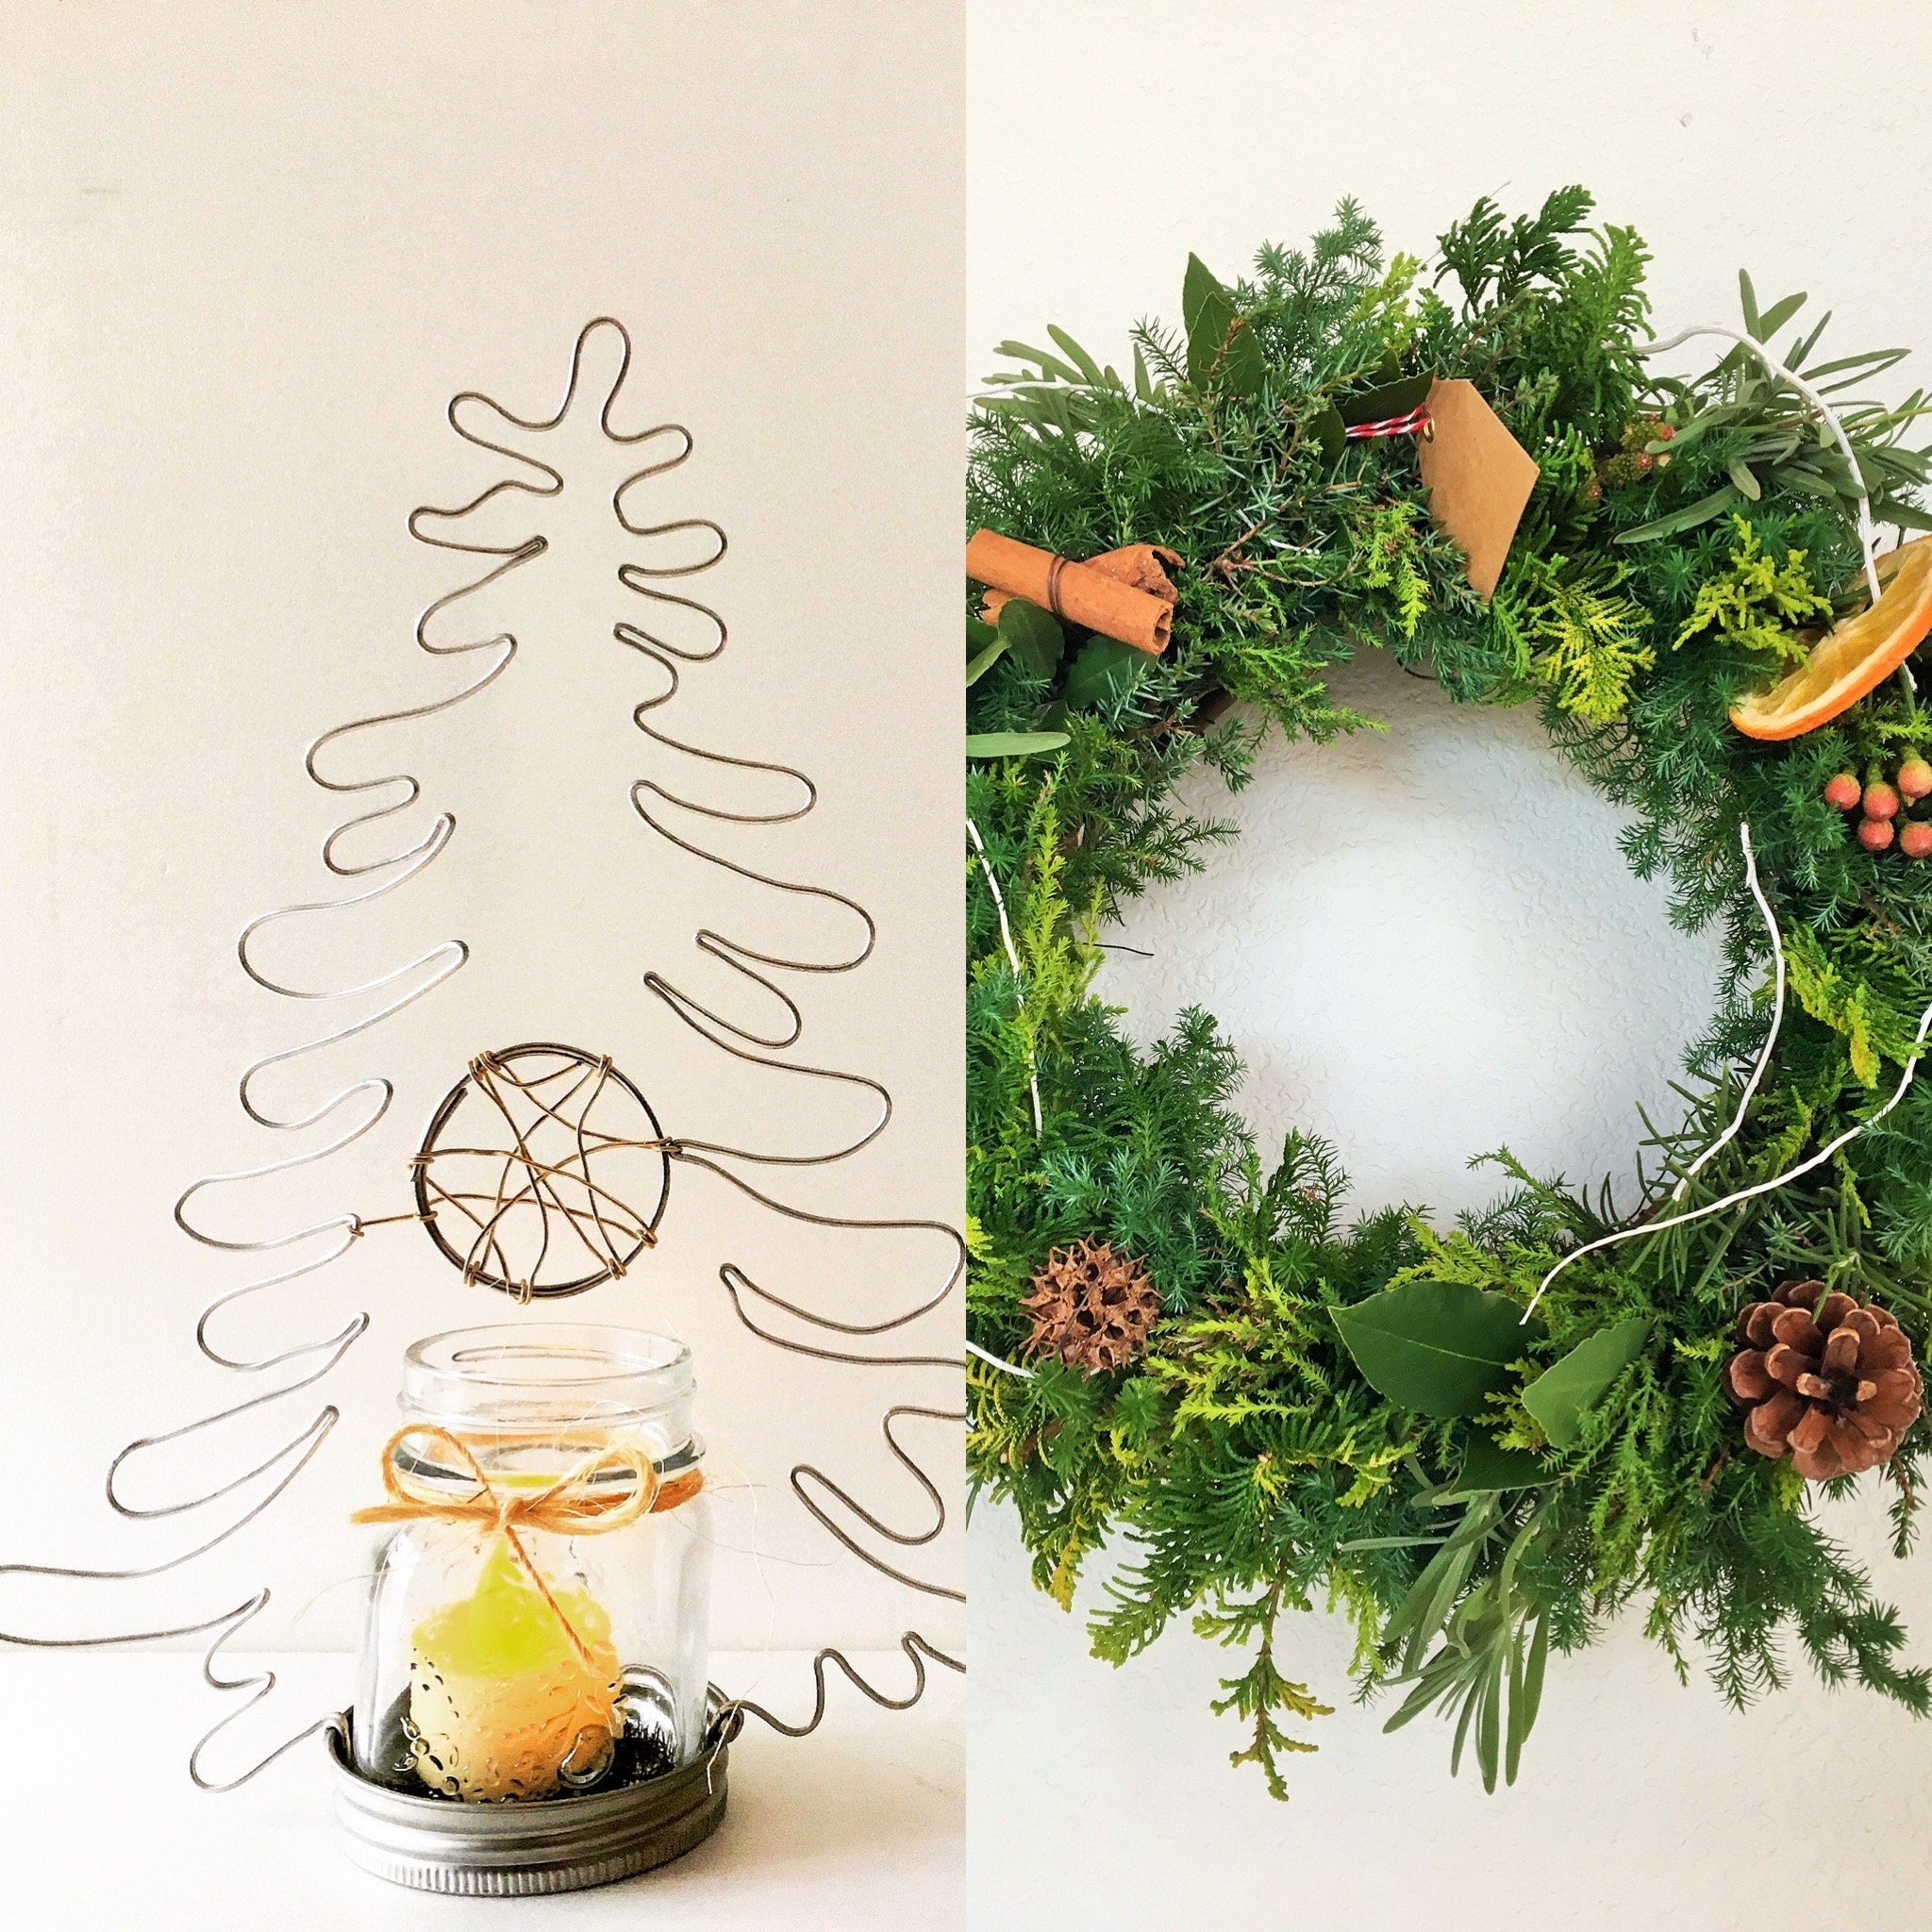 12月15日】玄関ニッチ飾るクリスマスインテリアを手作りしよう！：新潟市・プランツアート・植栽デザイン | みどりデザイン研究所